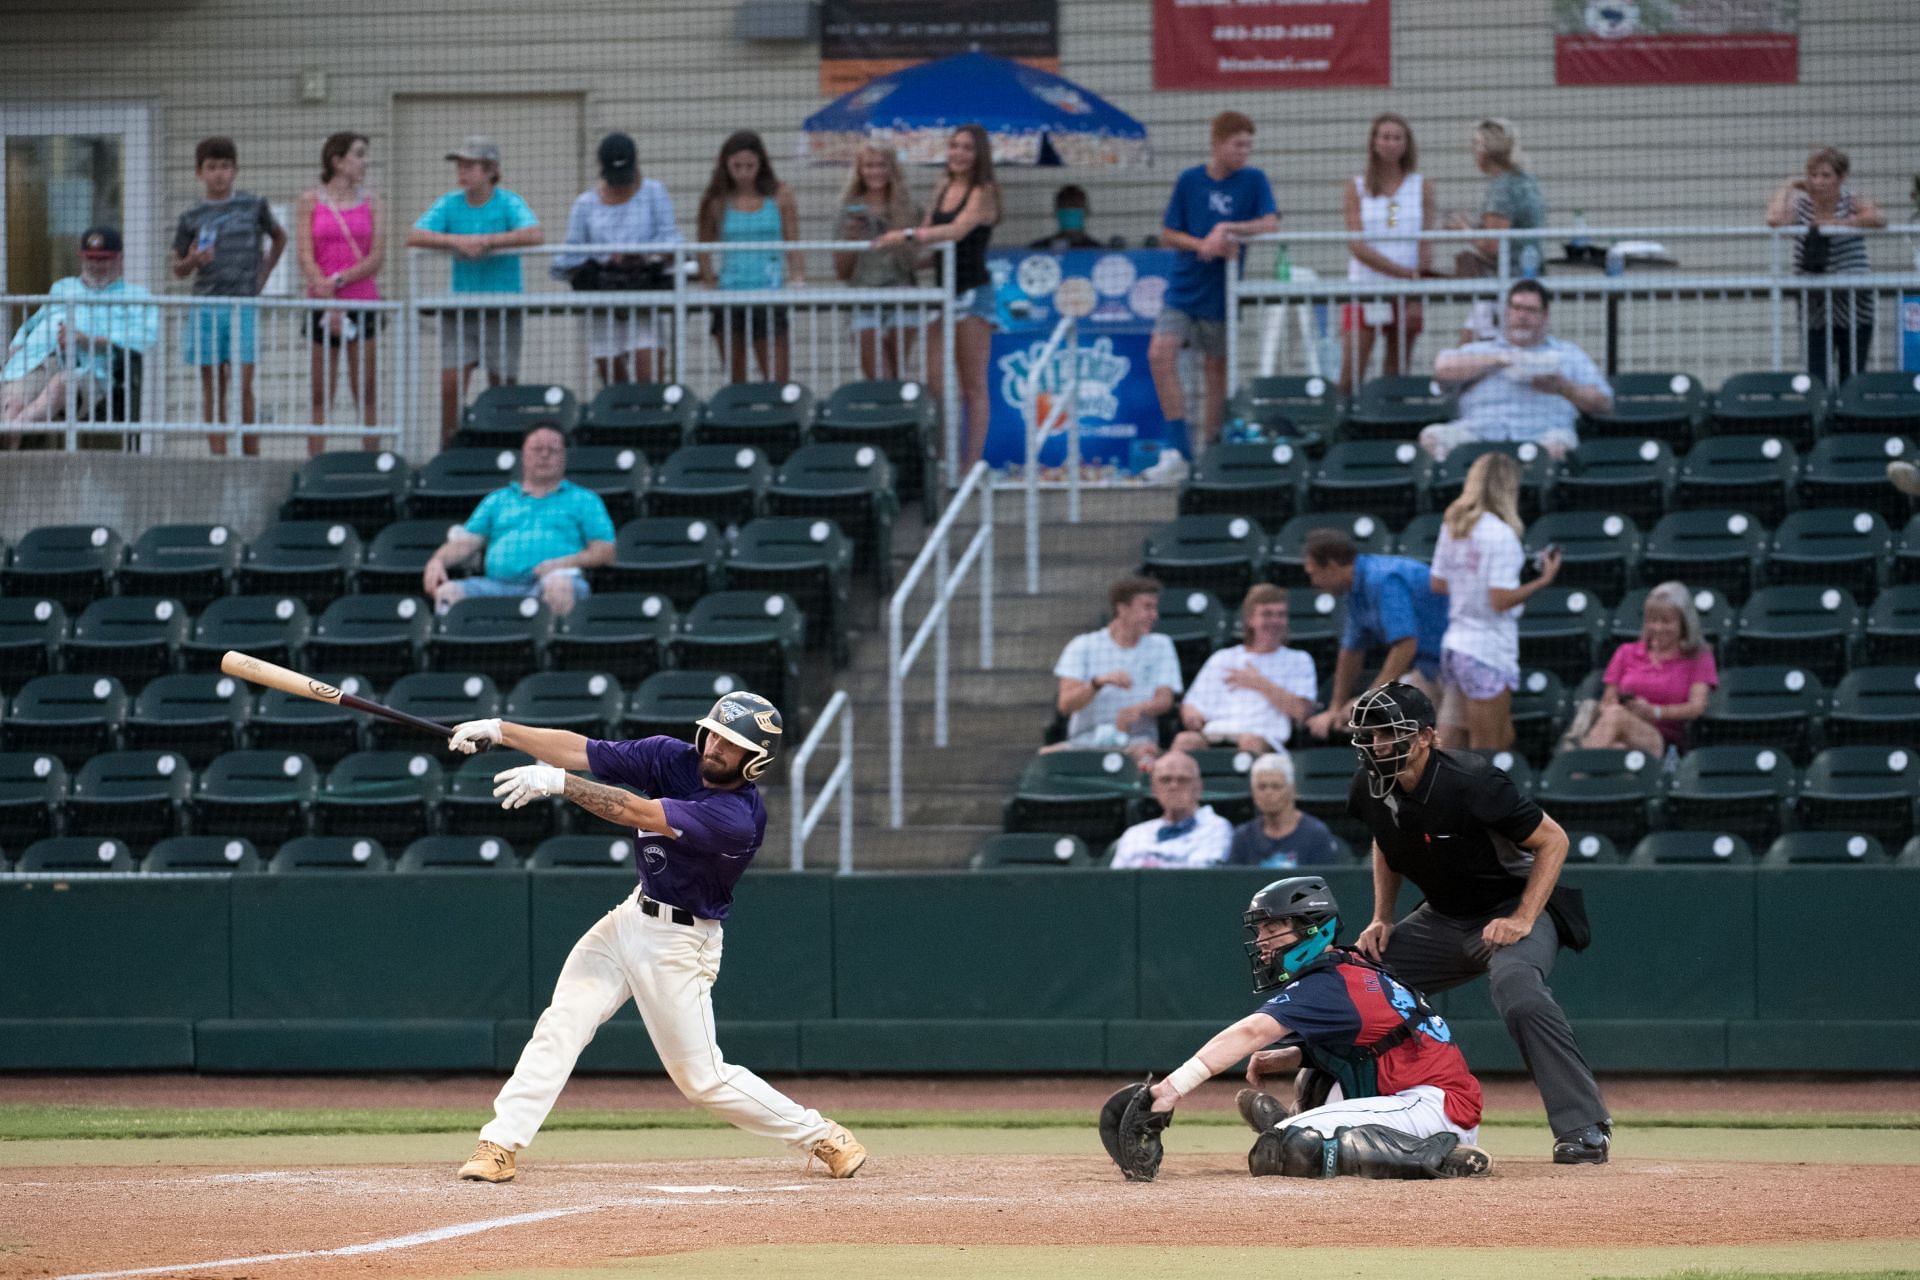 The Savanah Bananas compete in the Coastal Plain League, a collegiate summer baseball league.